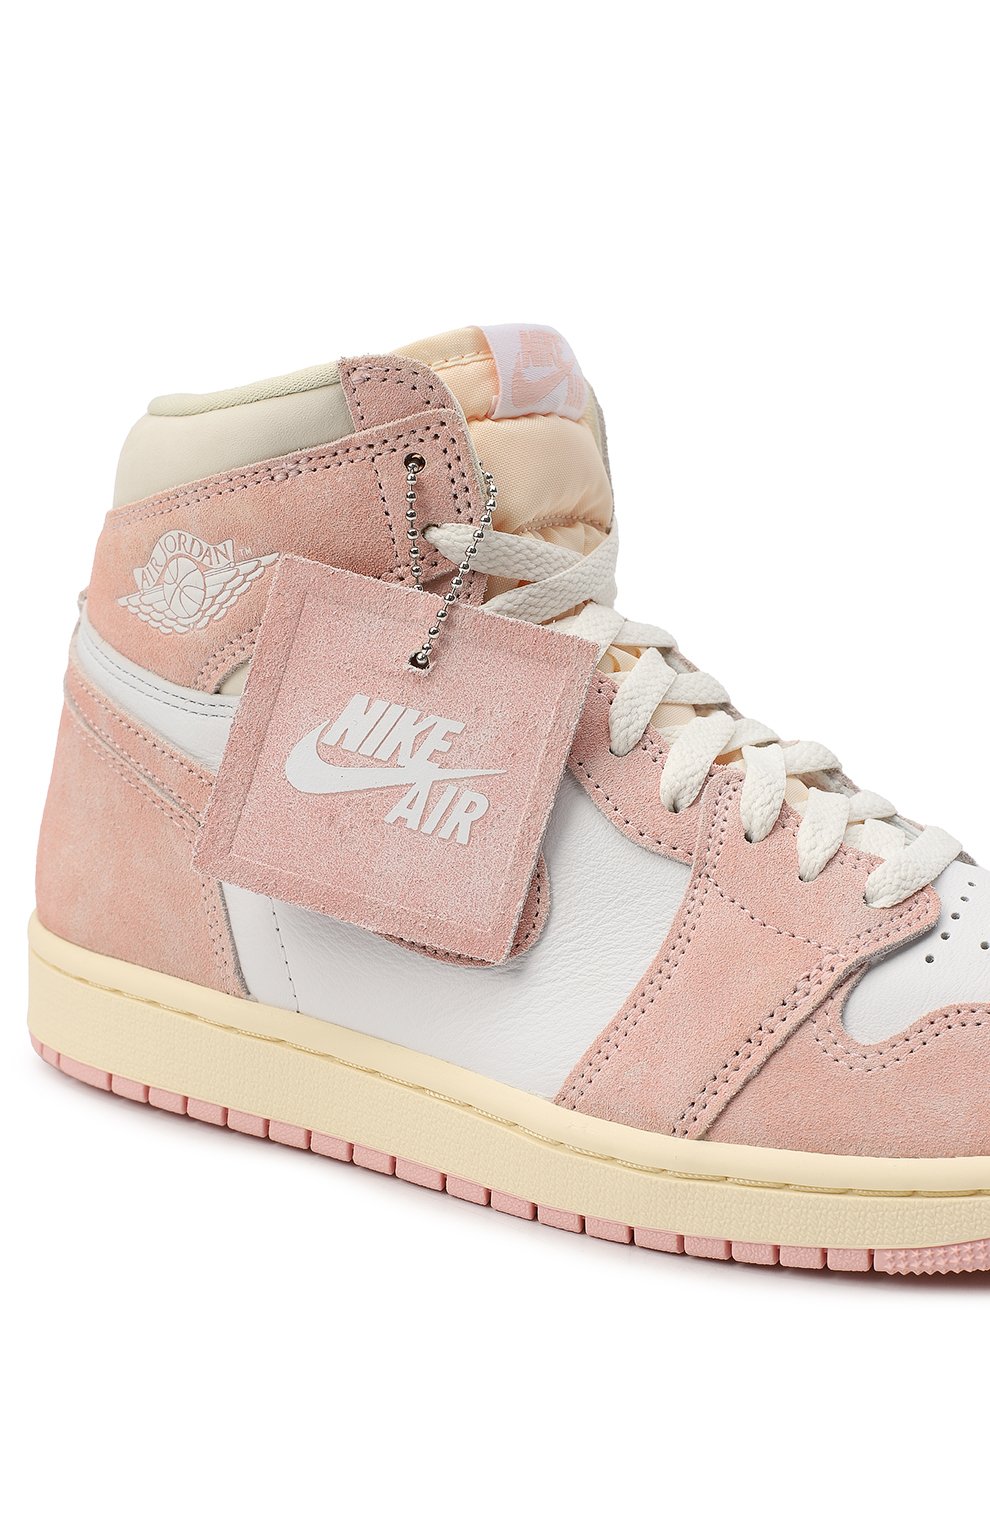 Кеды Air Jordan 1 Retro High OG Washed Pink | Nike | Розовый - 8